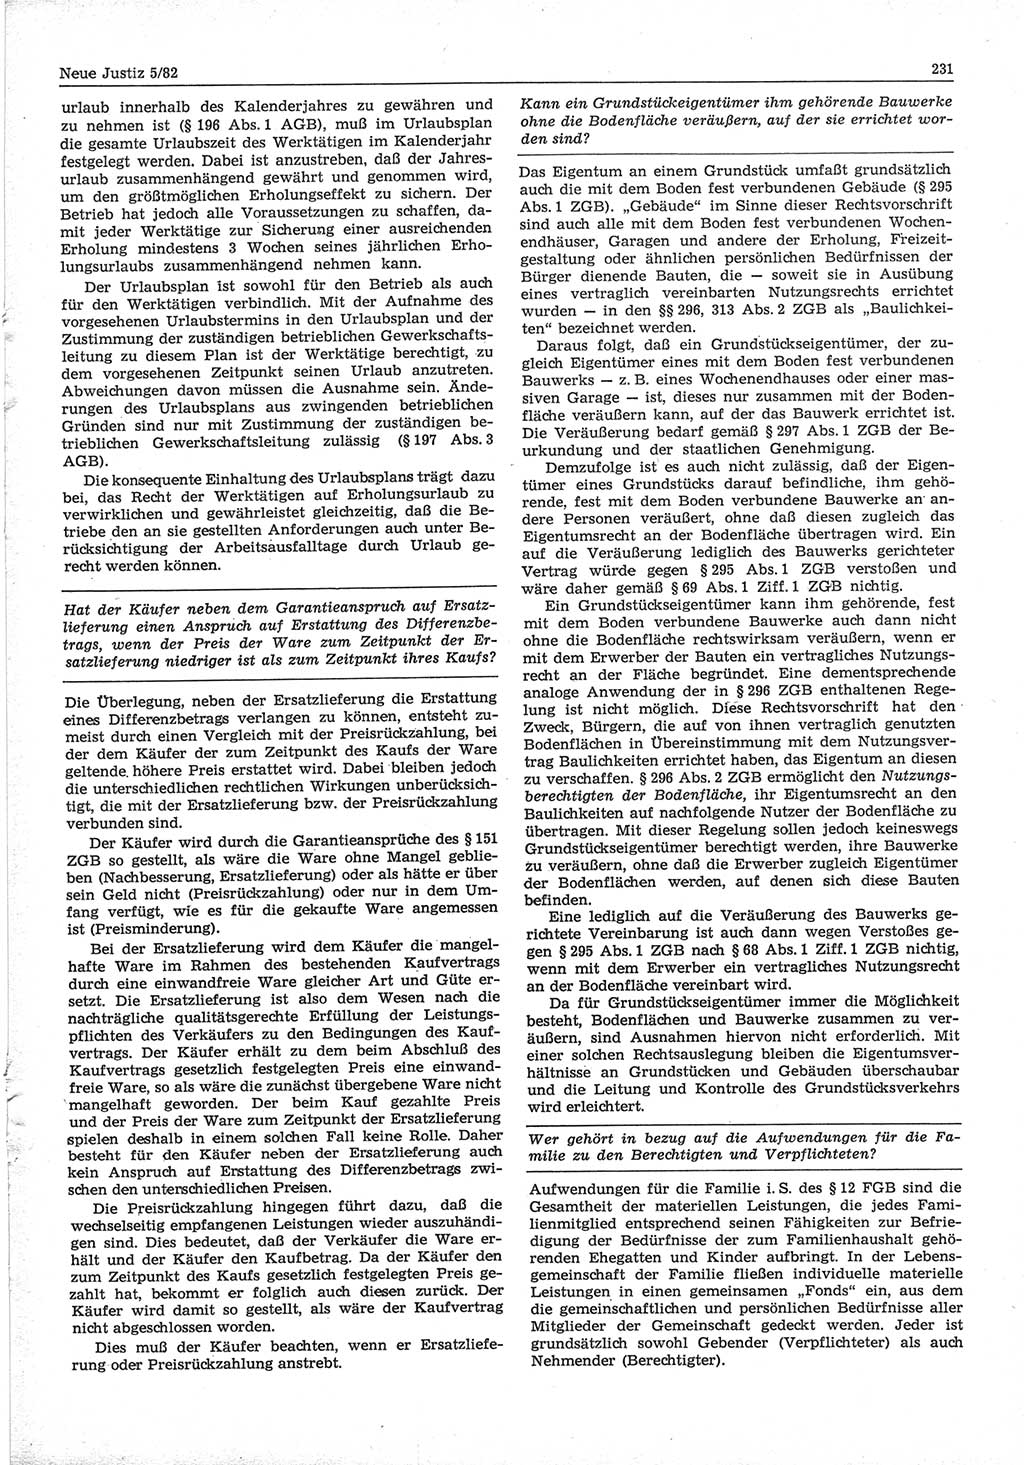 Neue Justiz (NJ), Zeitschrift für sozialistisches Recht und Gesetzlichkeit [Deutsche Demokratische Republik (DDR)], 36. Jahrgang 1982, Seite 231 (NJ DDR 1982, S. 231)